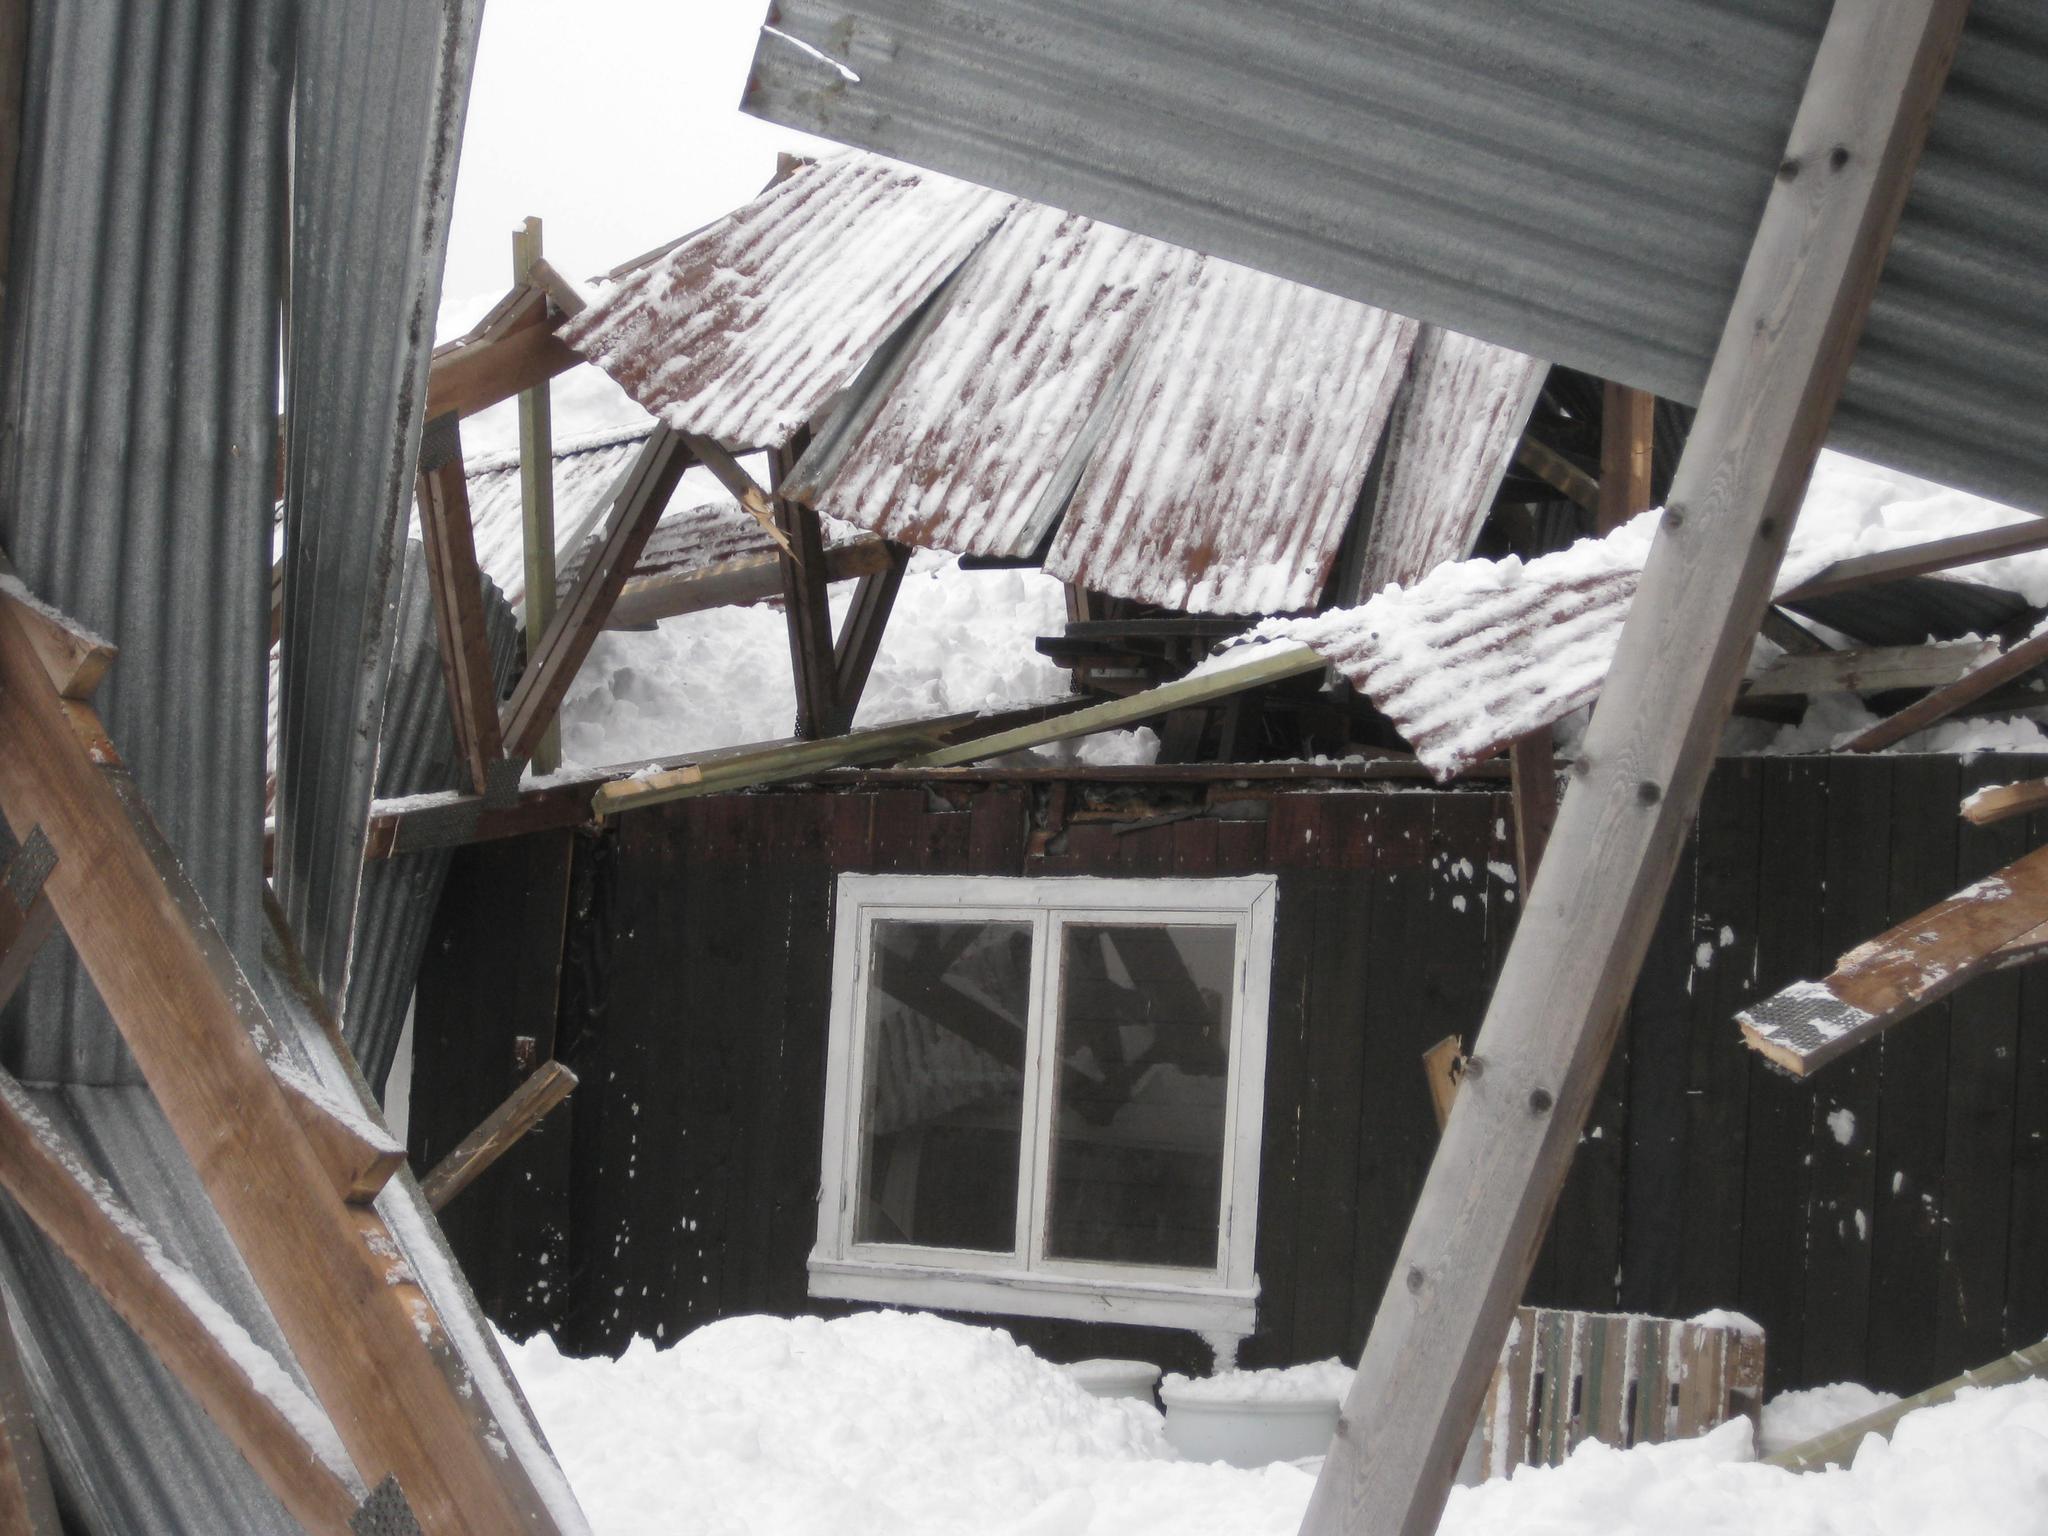 STORE KONSEKVENSER: Konsekvensene av å la være å måke snø fra tak kan bli store både for mennesker og hus. 